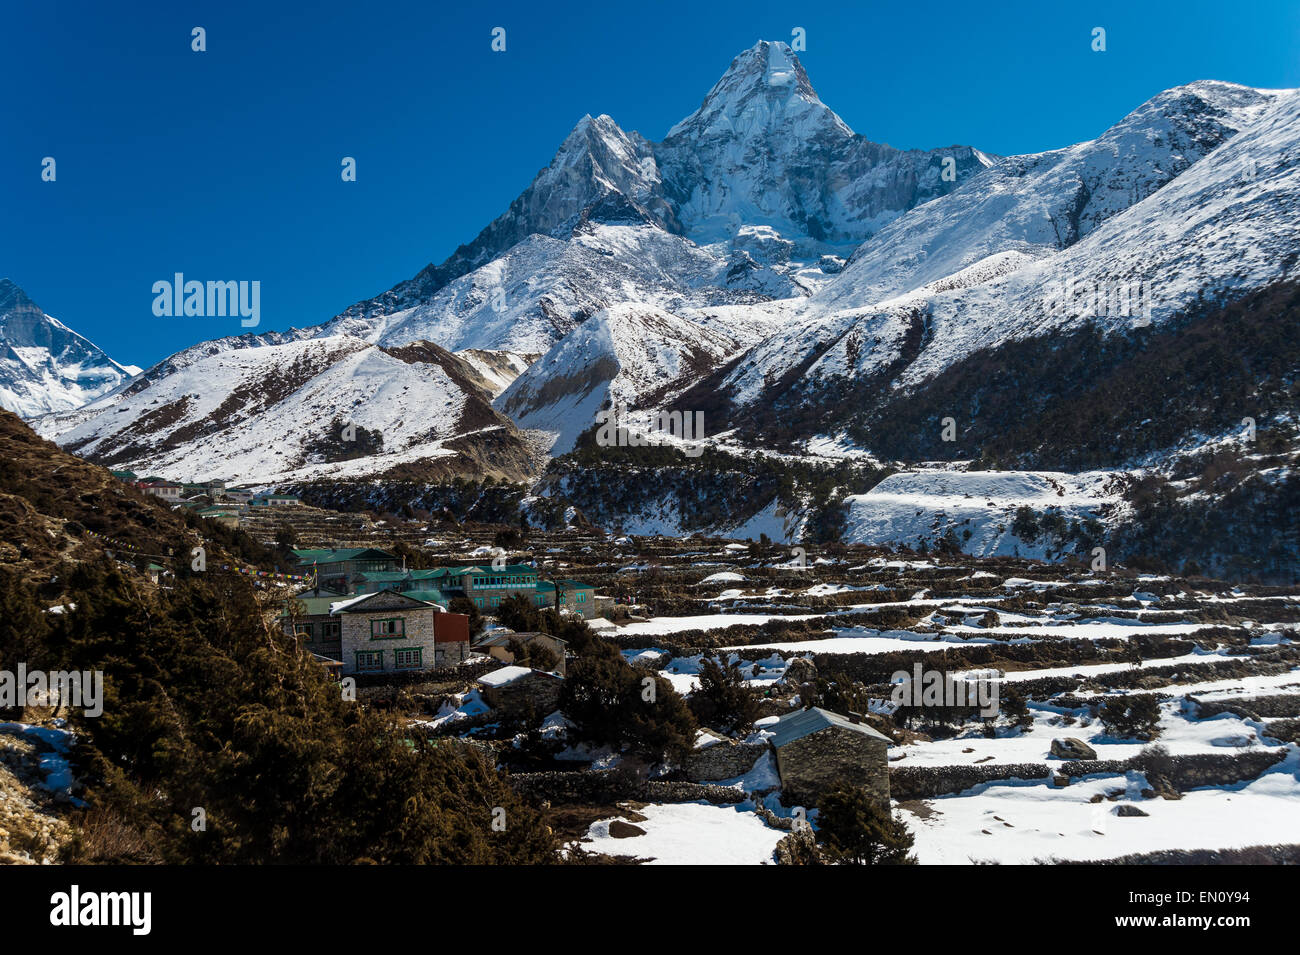 Village de khumjung au Népal, avec l'Ama Dablam moutain en arrière-plan Banque D'Images